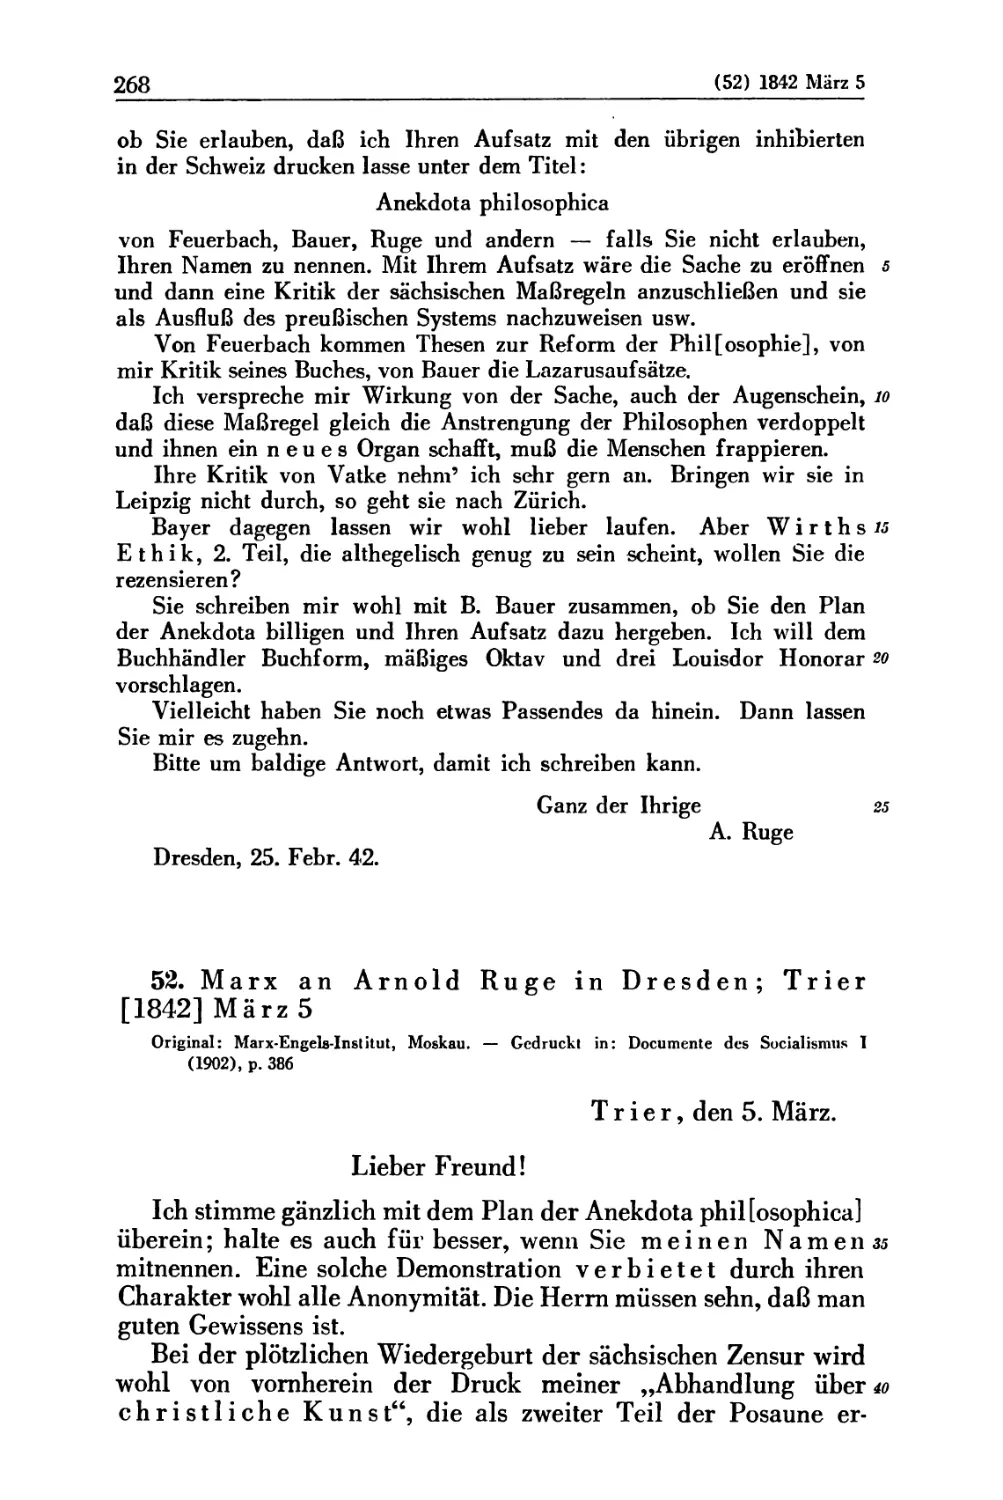 52. Marx an Arnold Ruge in Dresden; Trier [1842] März 5